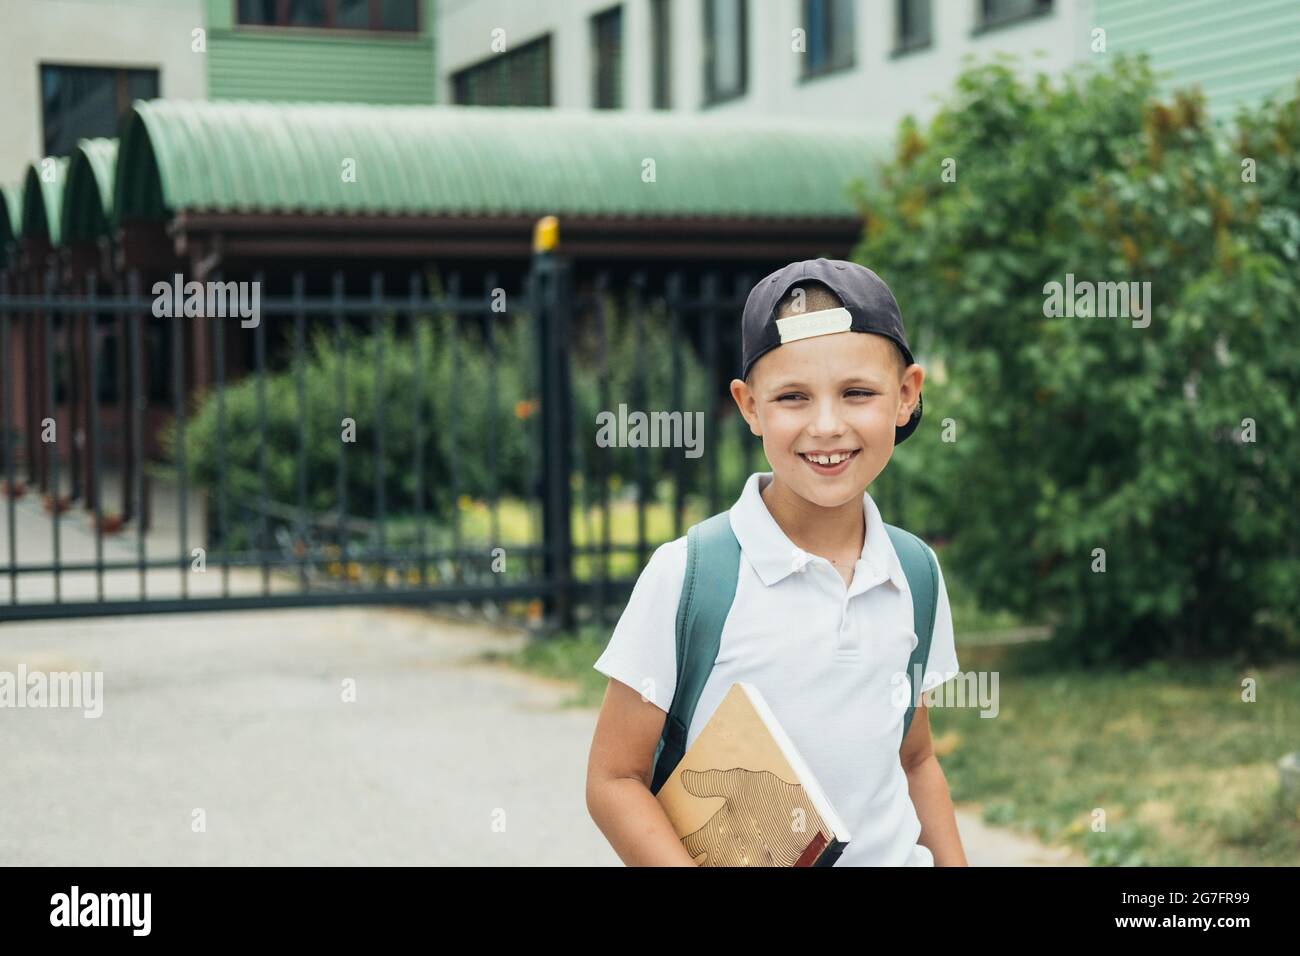 Niño sonriente, estudiante de escuela primaria, caminando a la escuela con bolsa detrás y libro. Los estudiantes están listos para el nuevo año. Regreso a la escuela. Foto de stock